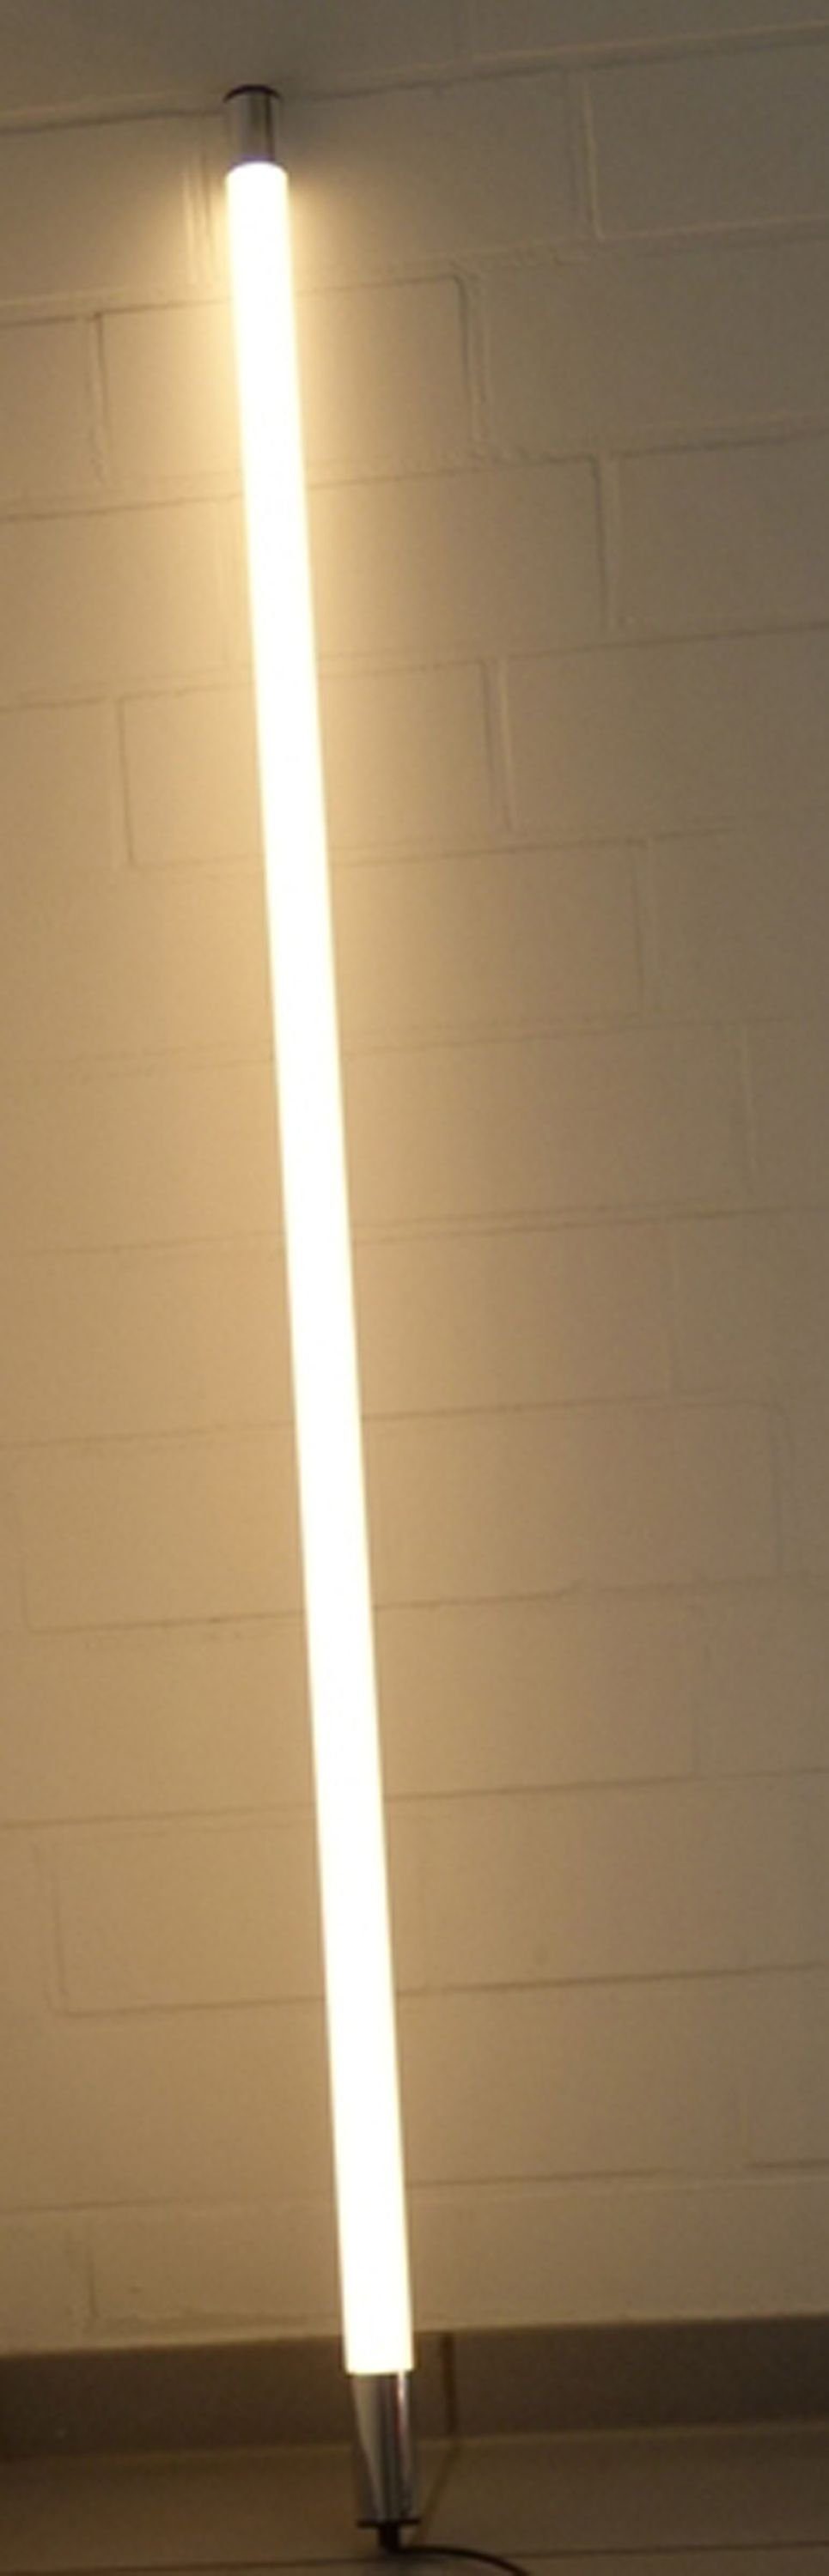 XENON LED Wandleuchte LED Leuchtstab Satiniert 0,63m Länge 800 Lumen IP44 Außen WarmWeiß, LED Röhre T8, Xenon Warm Weiß